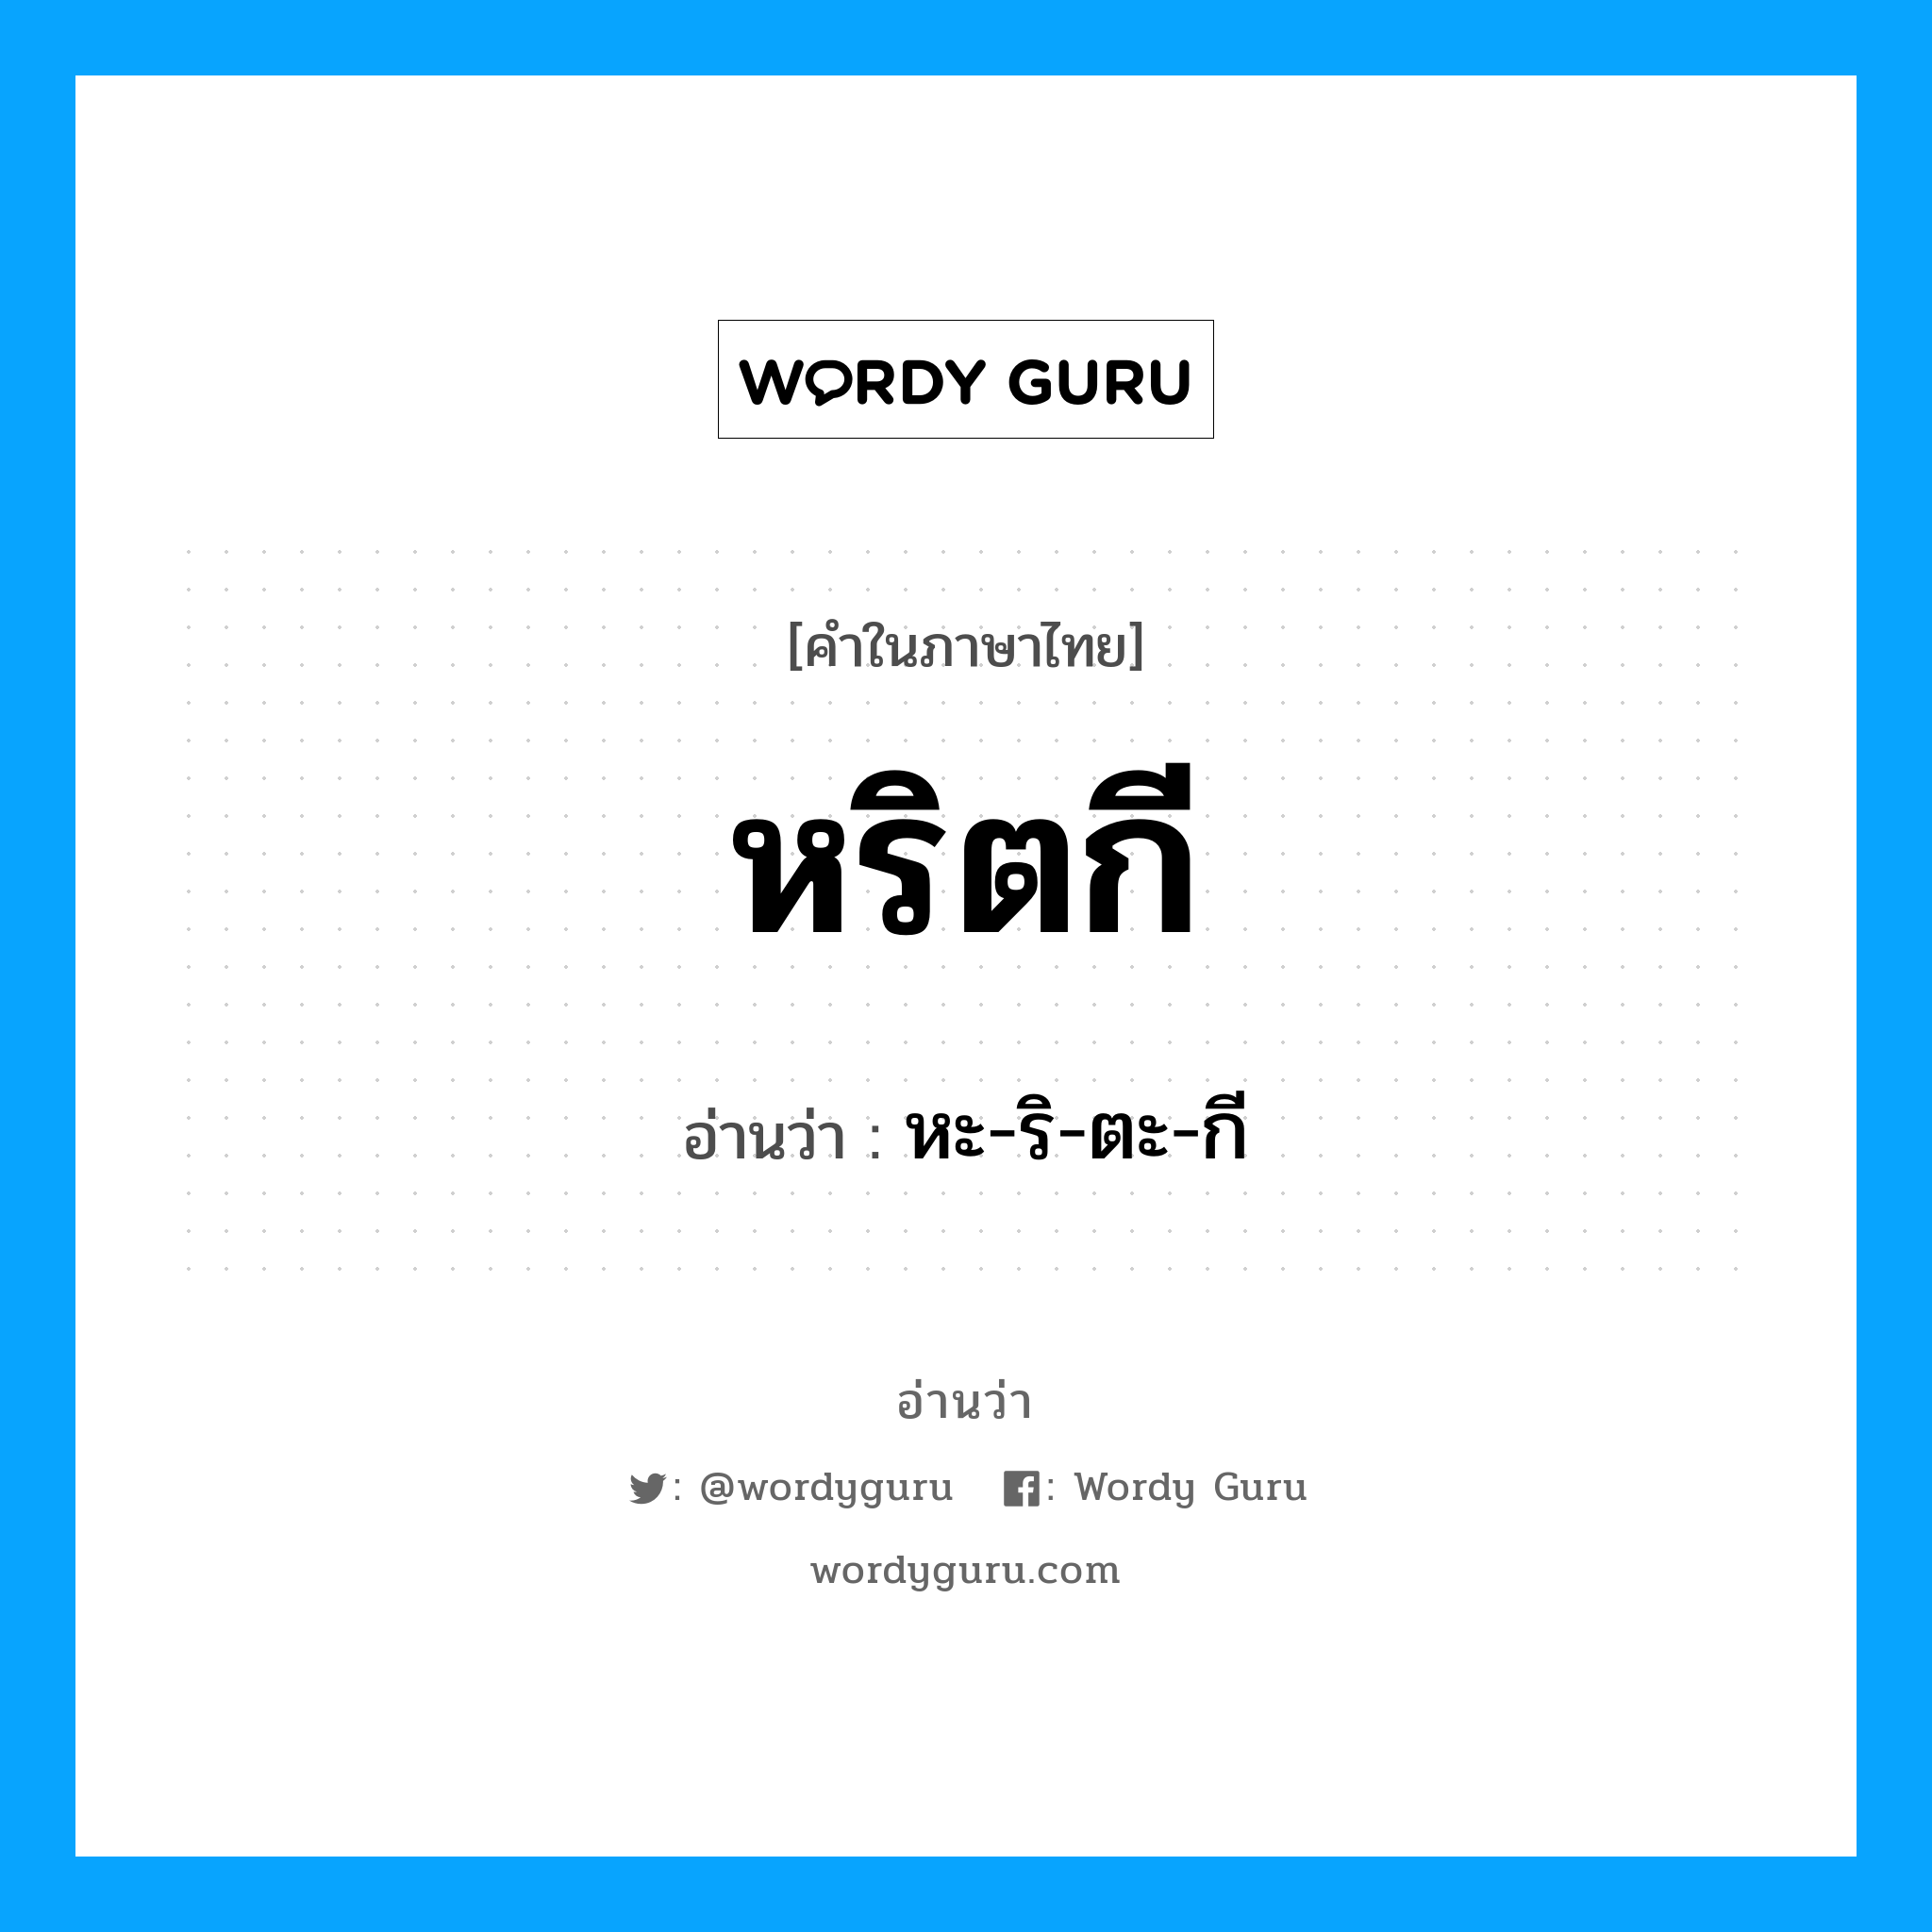 หะ-ริ-ตะ-กี เป็นคำอ่านของคำไหน?, คำในภาษาไทย หะ-ริ-ตะ-กี อ่านว่า หริตกี